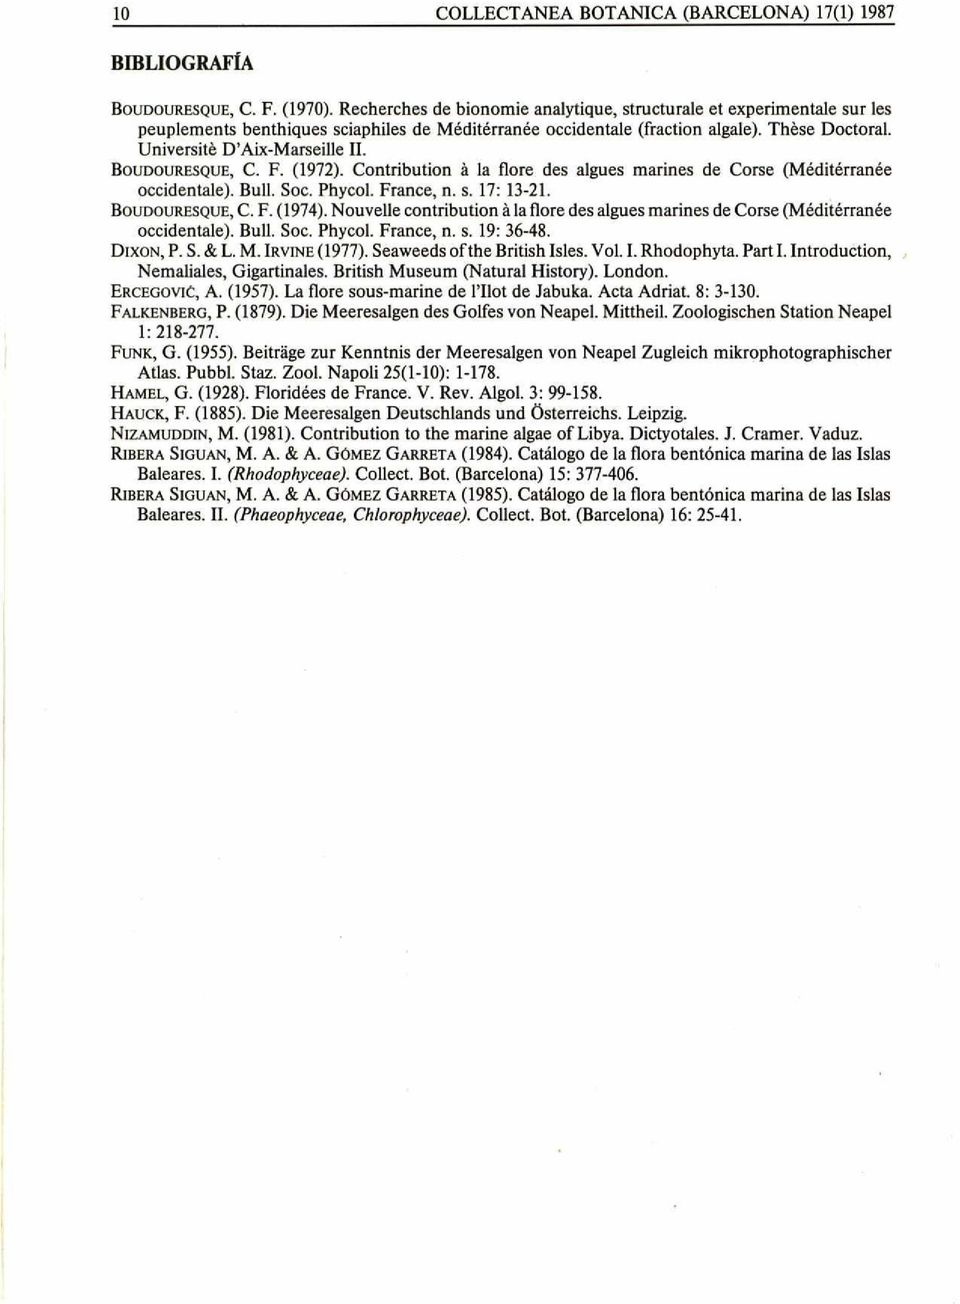 BOUDOURESQUE, C. F. (1972). Contribution à la flore des algues marines de Corse (Méditerranée occidentale). Bull. Soc. Phycol. France, n. s. 17: 13-21. BOUDOURESQUE, C. F. (1974).